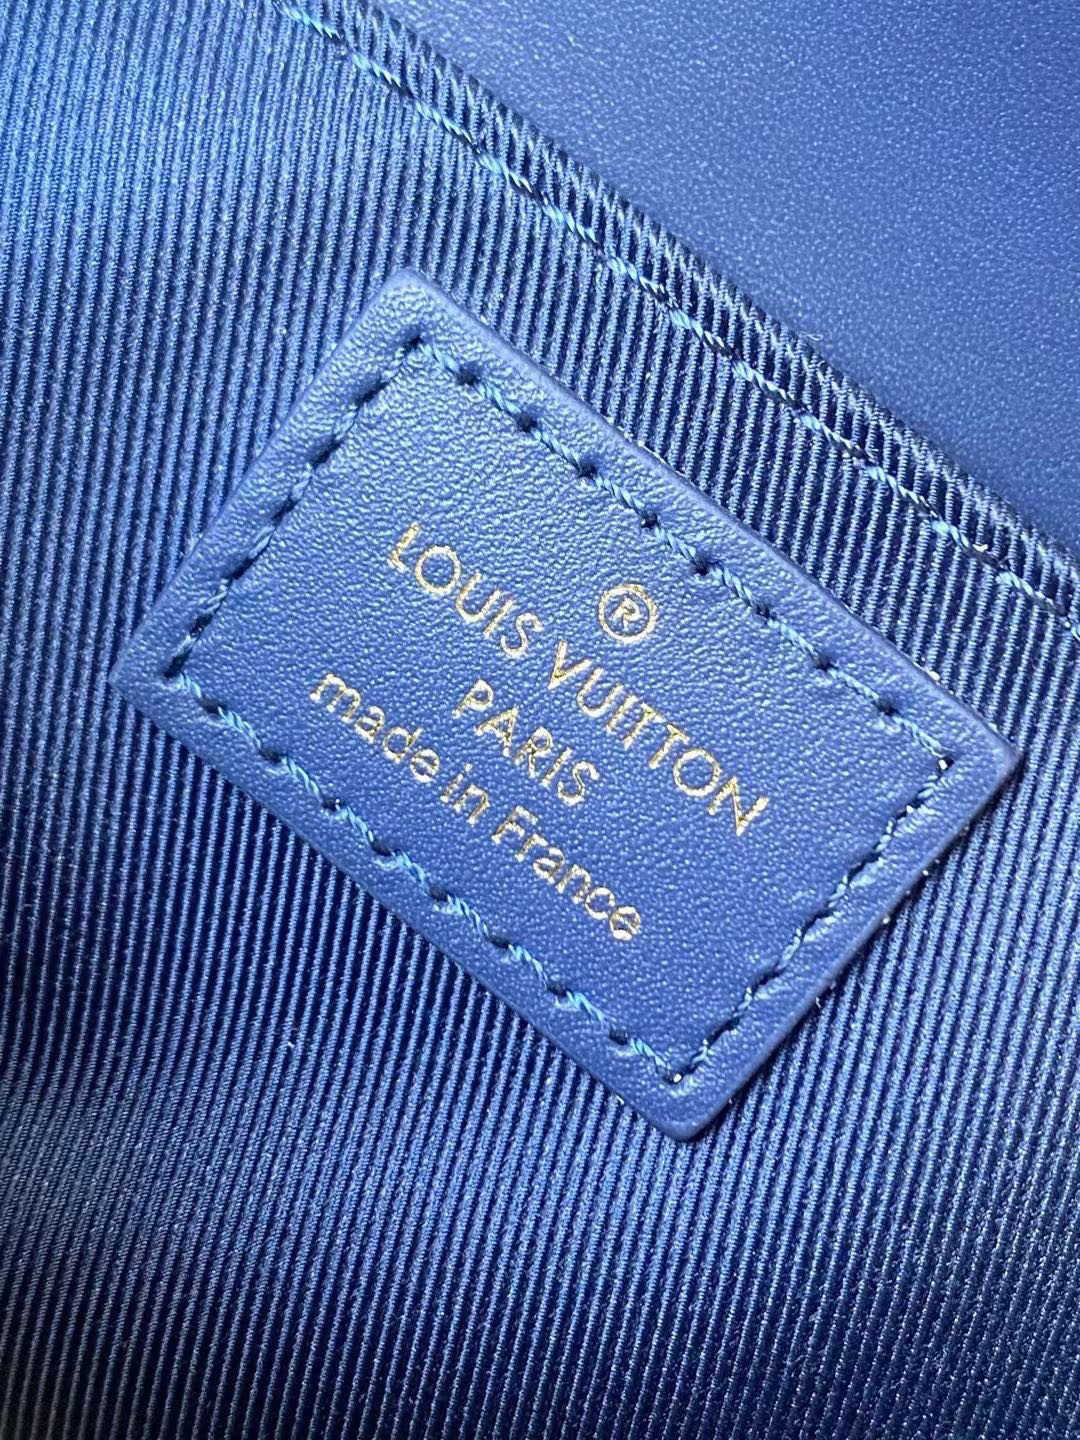 Louis Vuitton Pochette Metis East West Blue